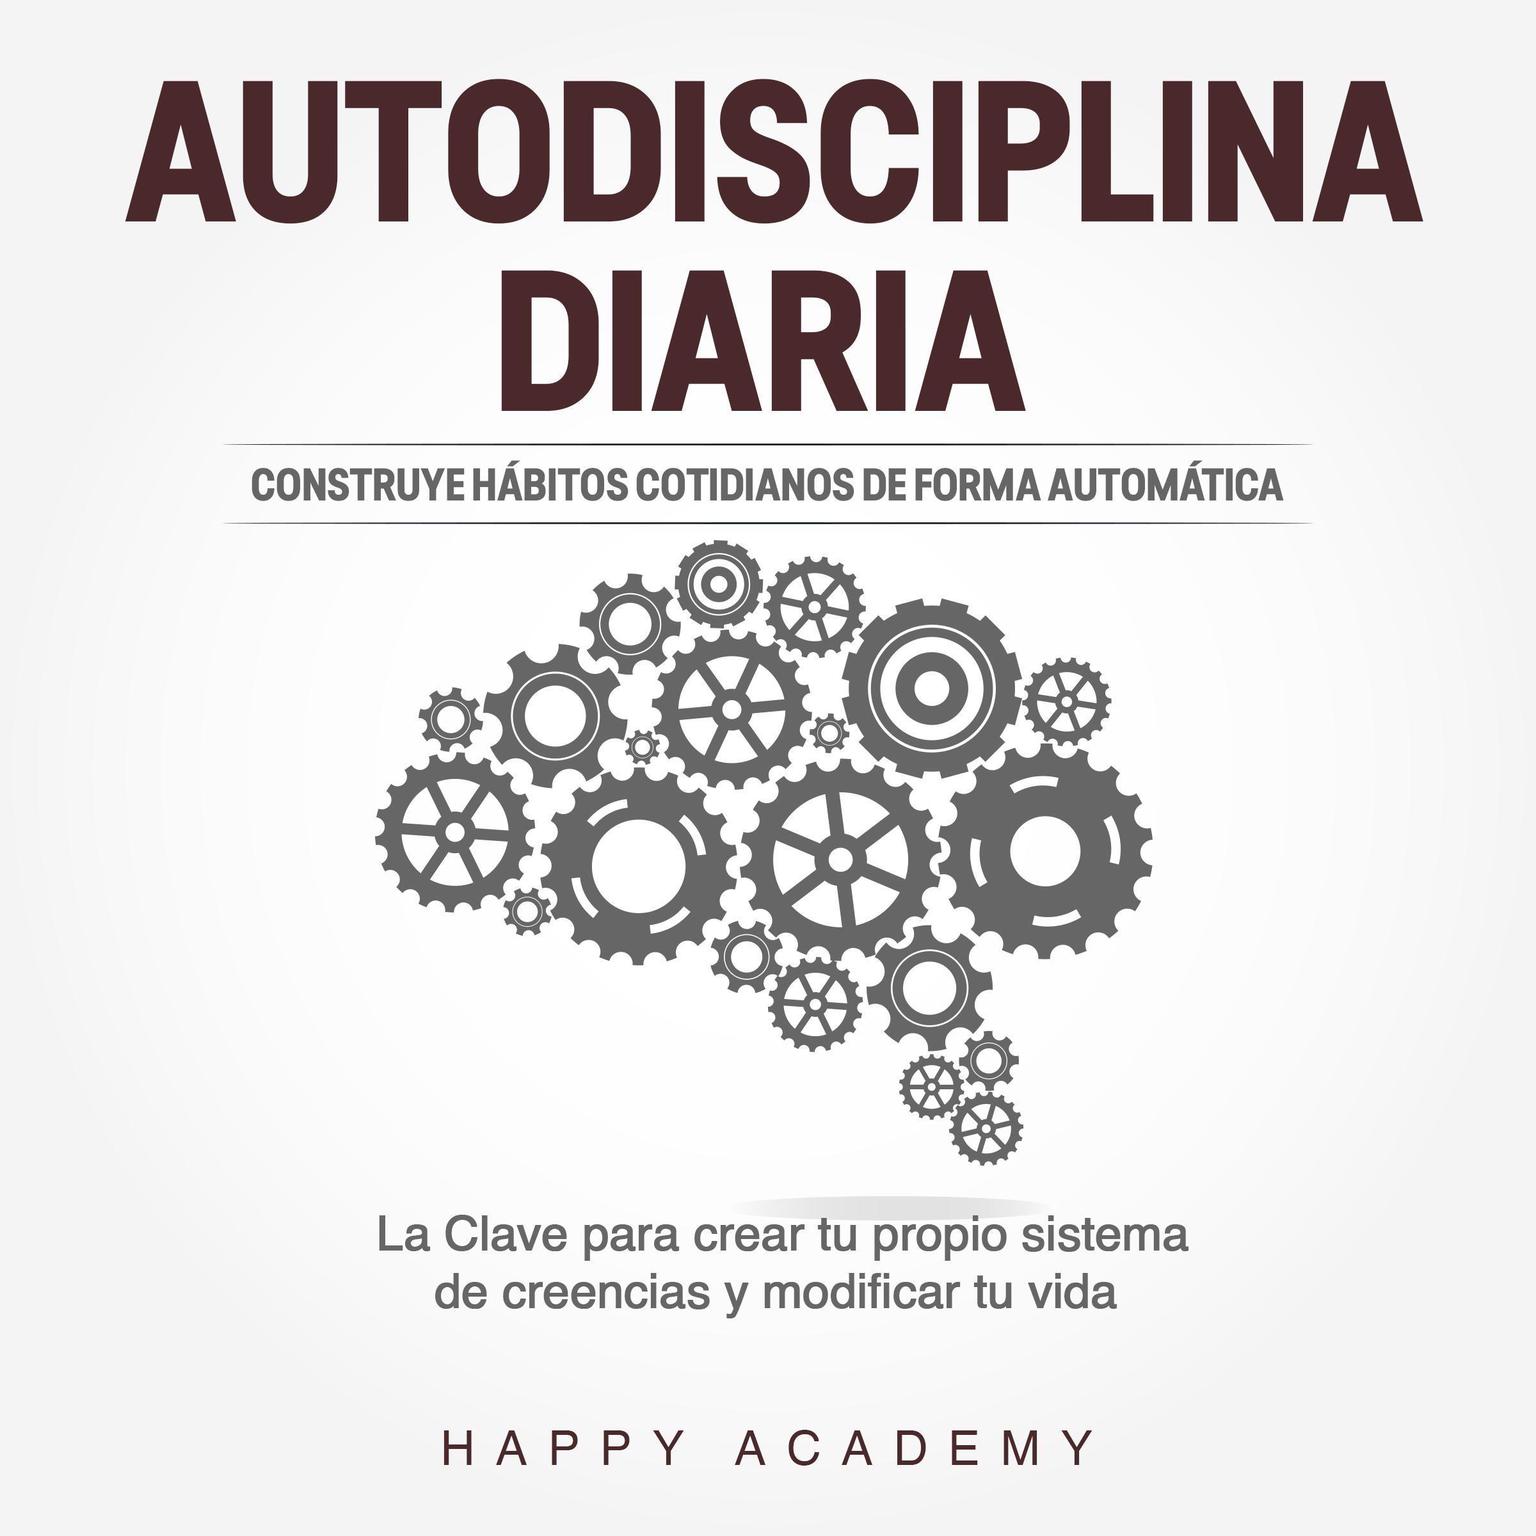 Autodisciplina Diaria: Construye hábitos cotidianos de forma automática. La clave para crear tu propio sistema de creencias y modificar tu vida Audiobook, by Happy Academy